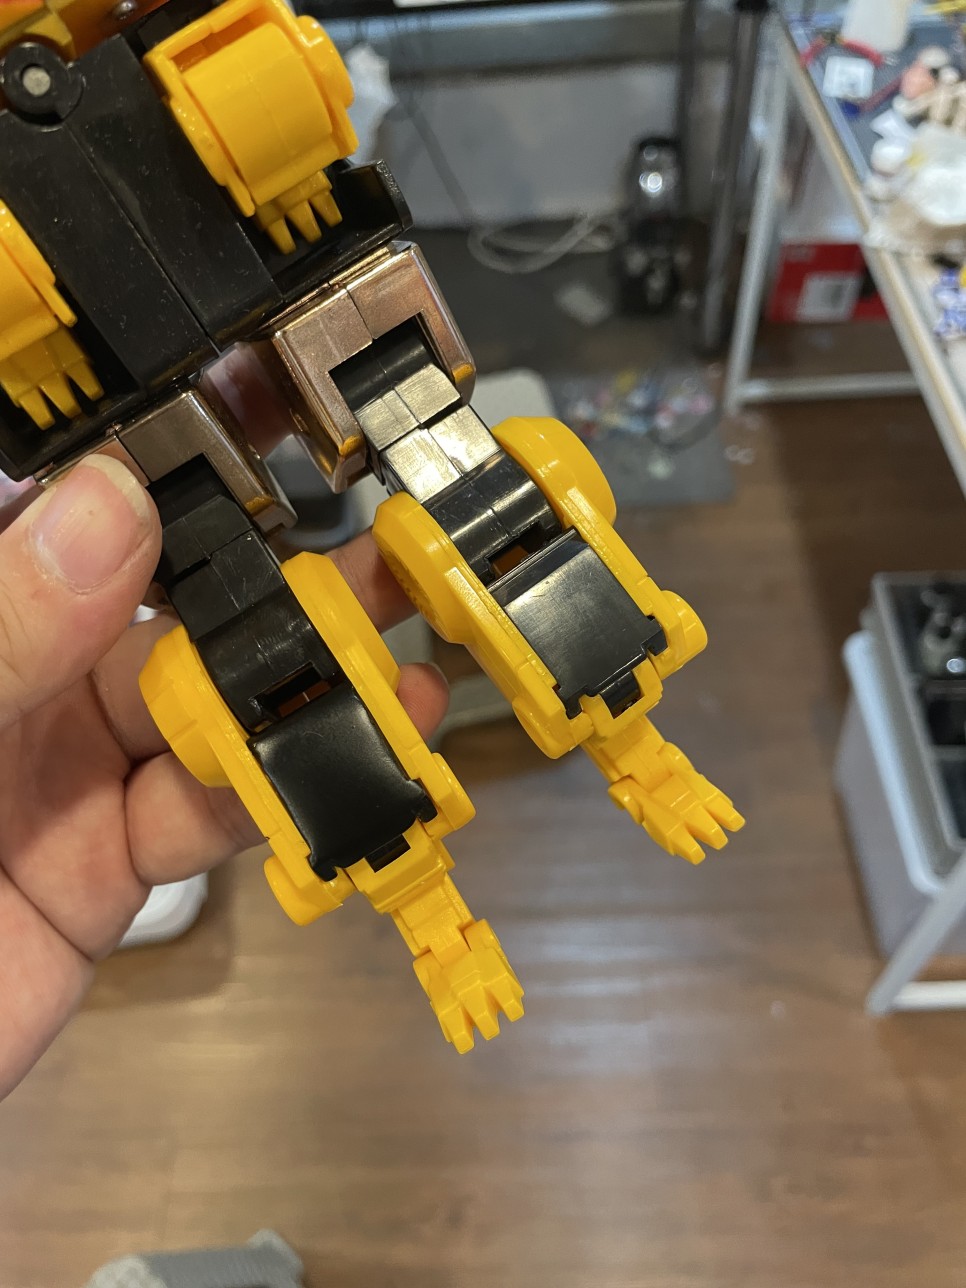 [장난감 복구] DX 라이브로보 팔 덮개 부품 복제 - 대구 장난감 수리 복구 의뢰